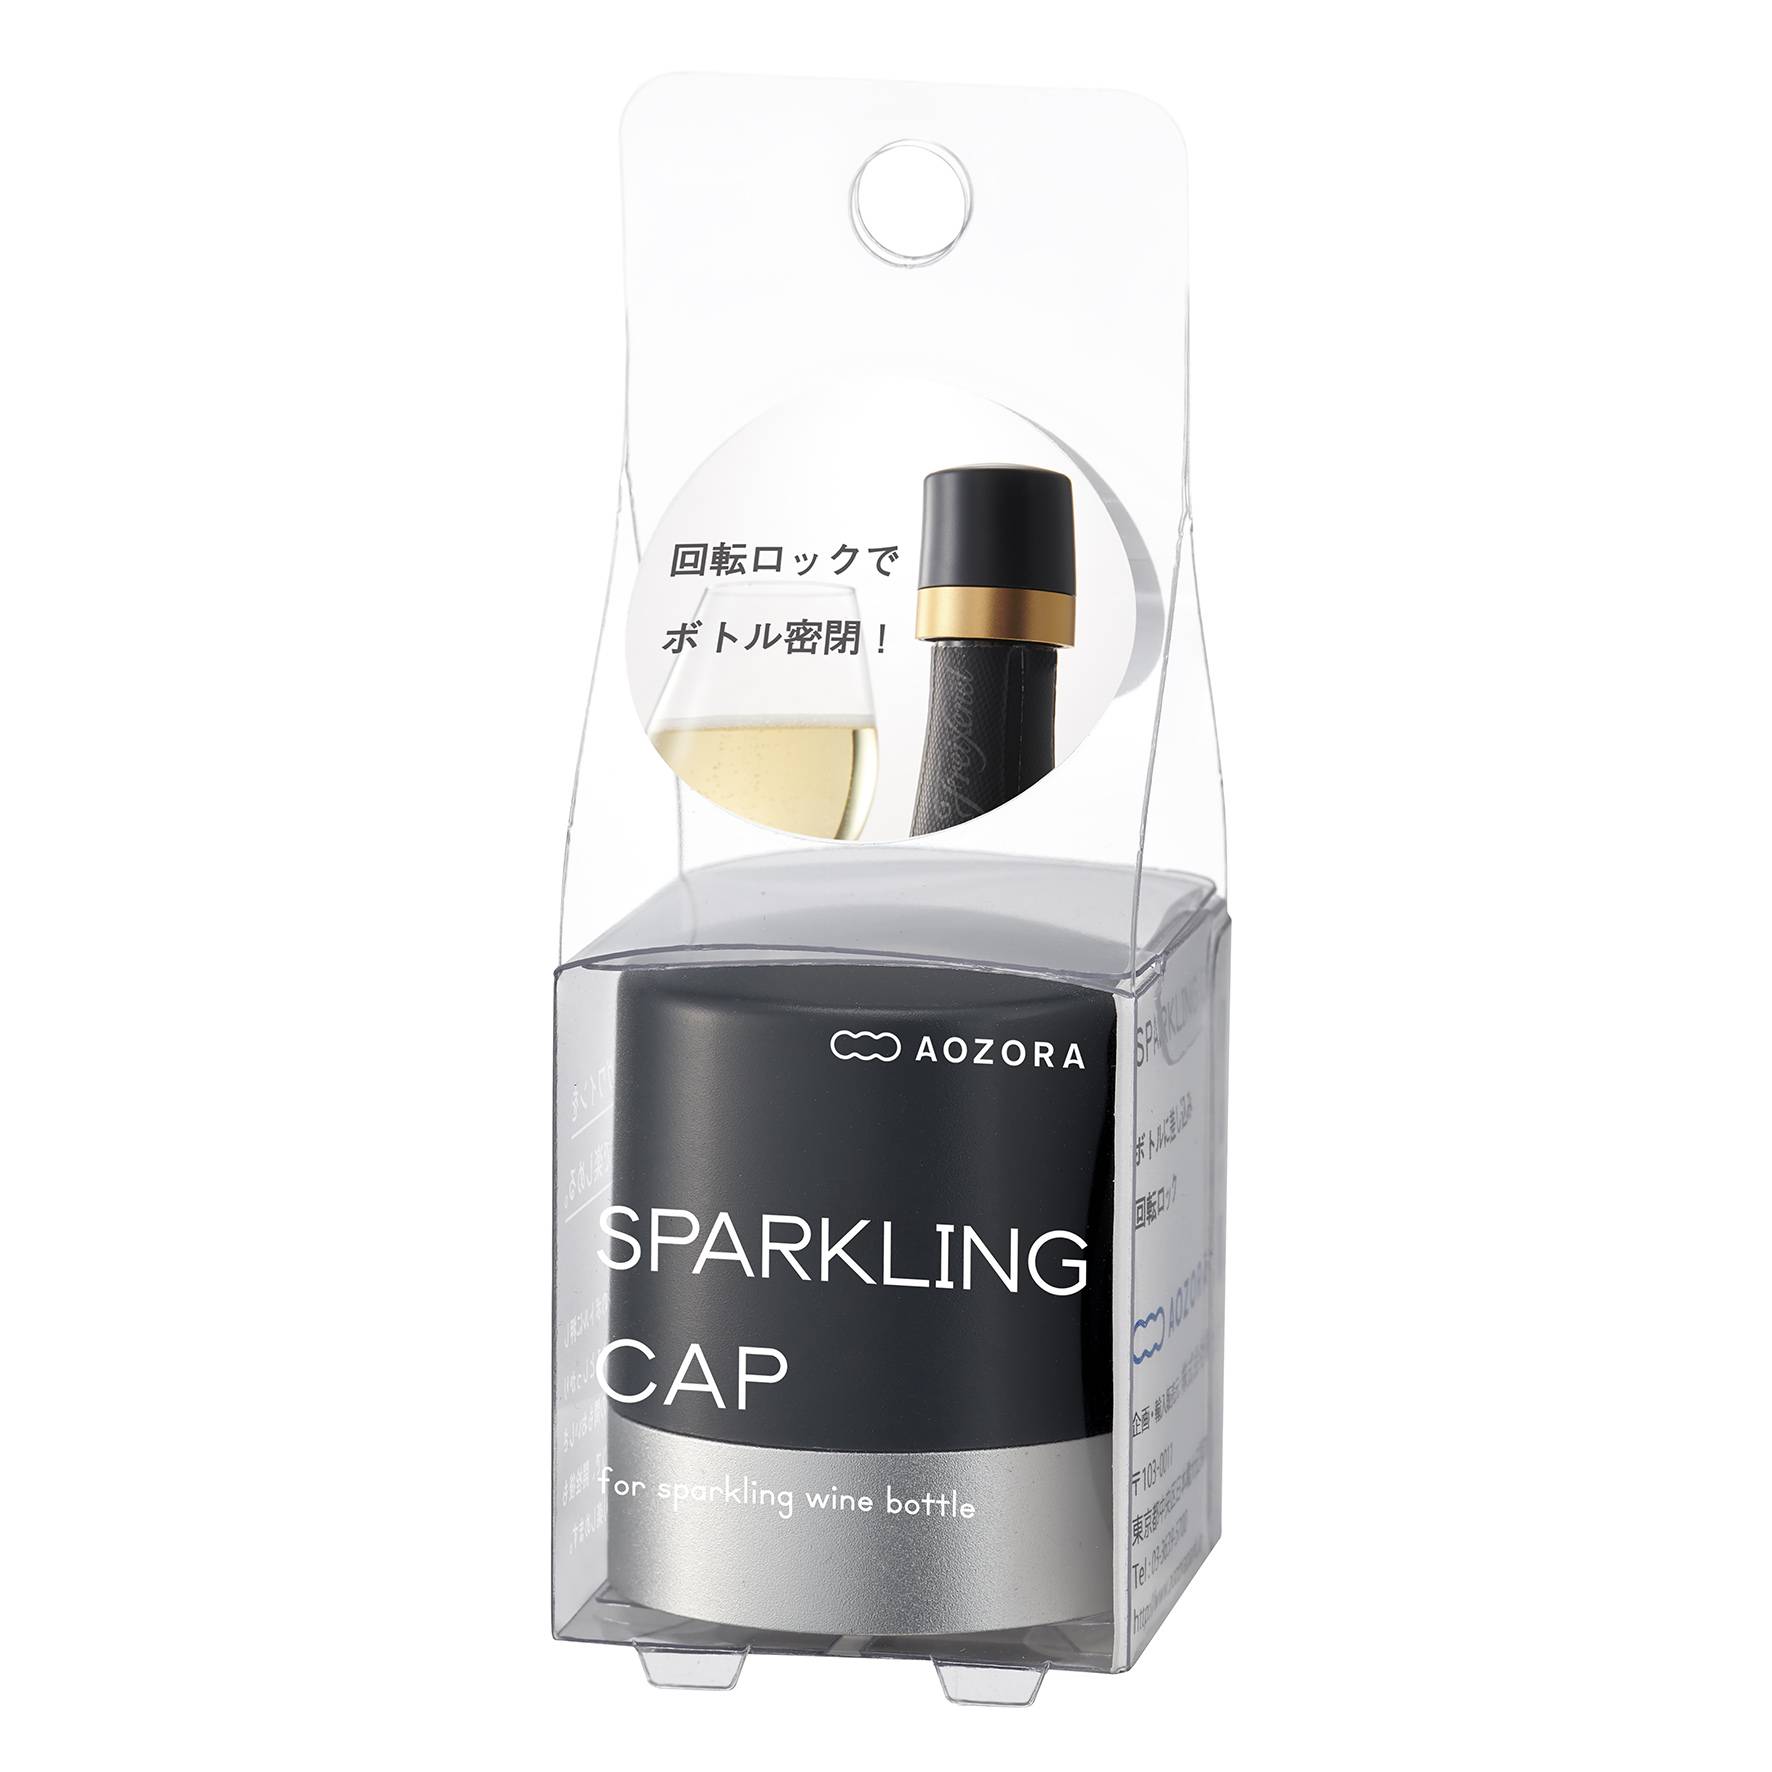 Sparkling Cap est un bouchon spécial pour les vins pétillants.